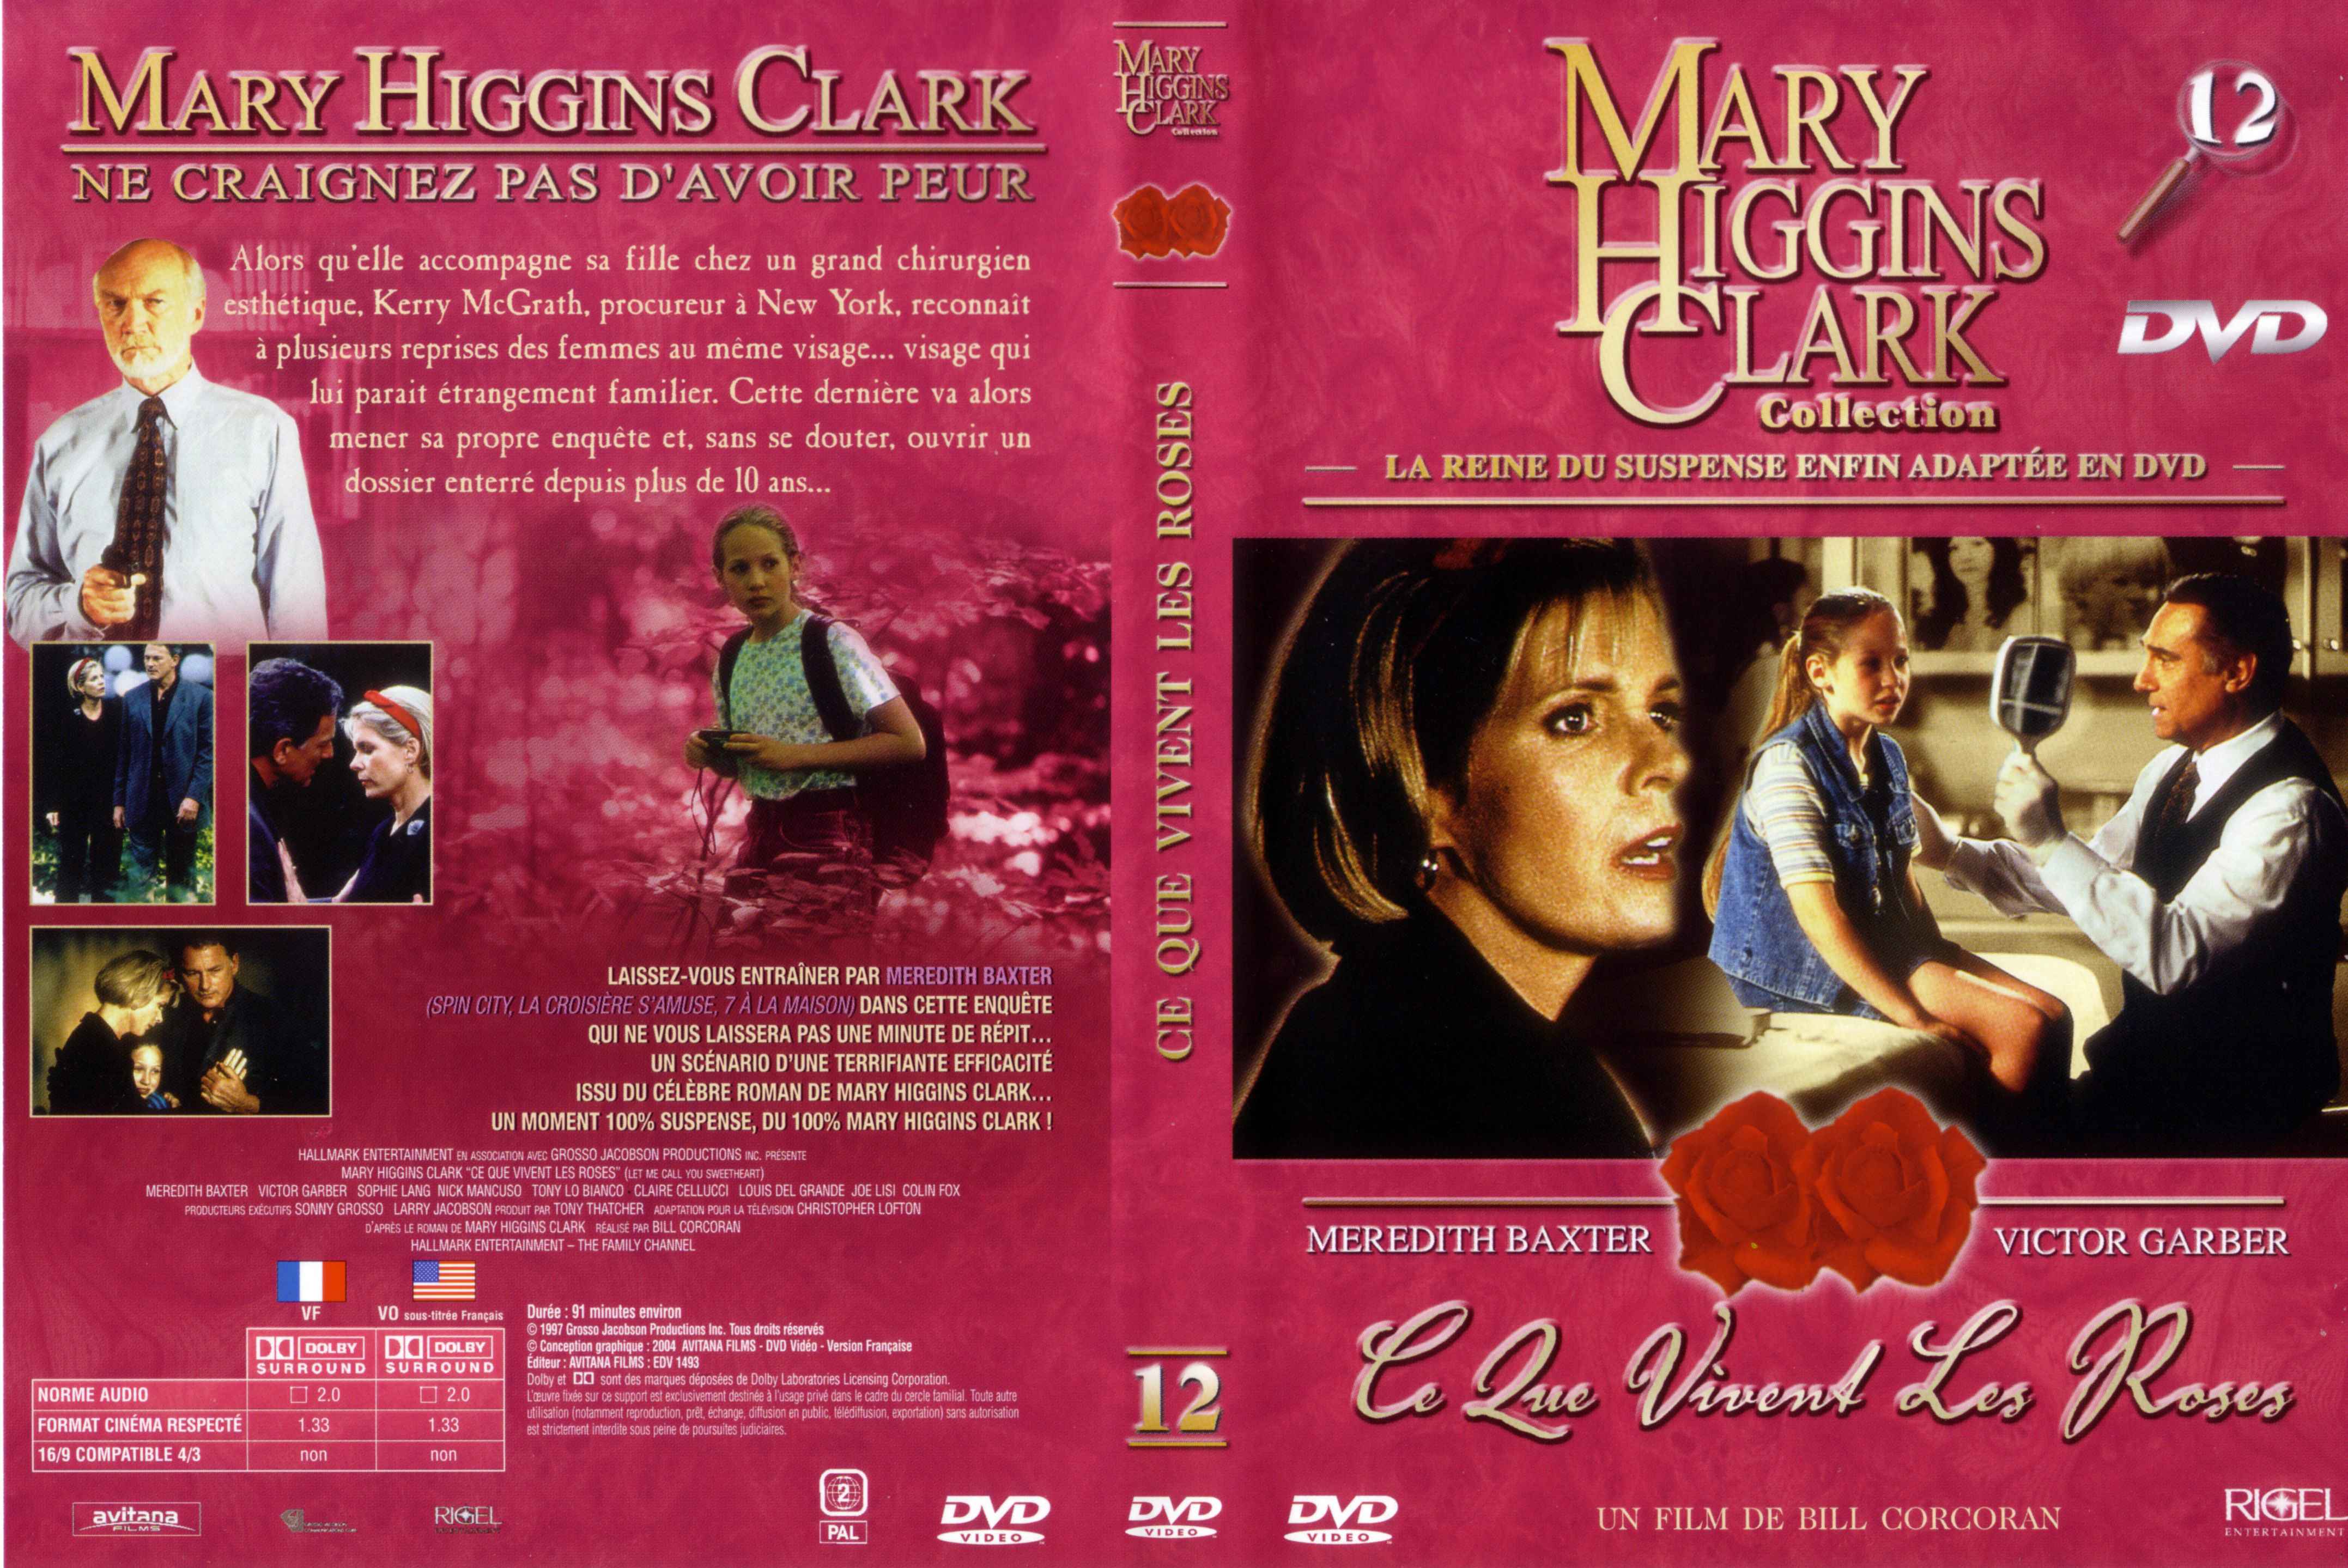 Jaquette DVD Mary Higgins Clark vol 12 - Ce que vivent les Roses